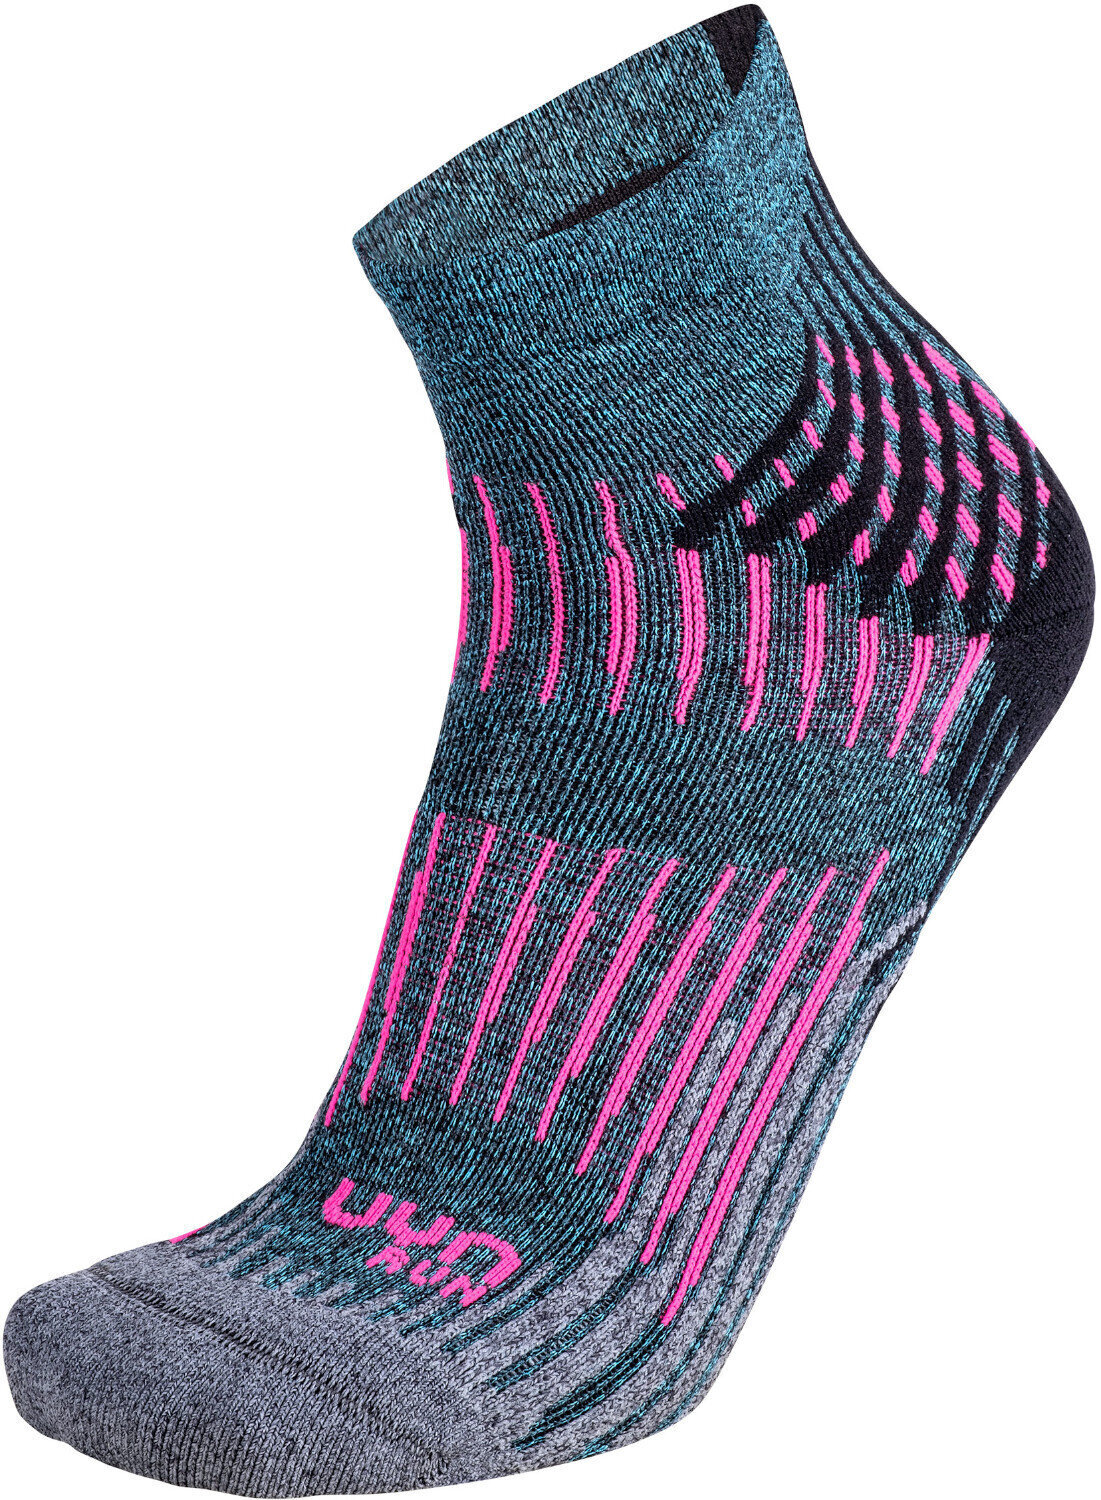 Κάλτσες Τρεξίματος UYN Run Shockwave Turquoise Melange-Γκρι-Pink 37/38 Κάλτσες Τρεξίματος